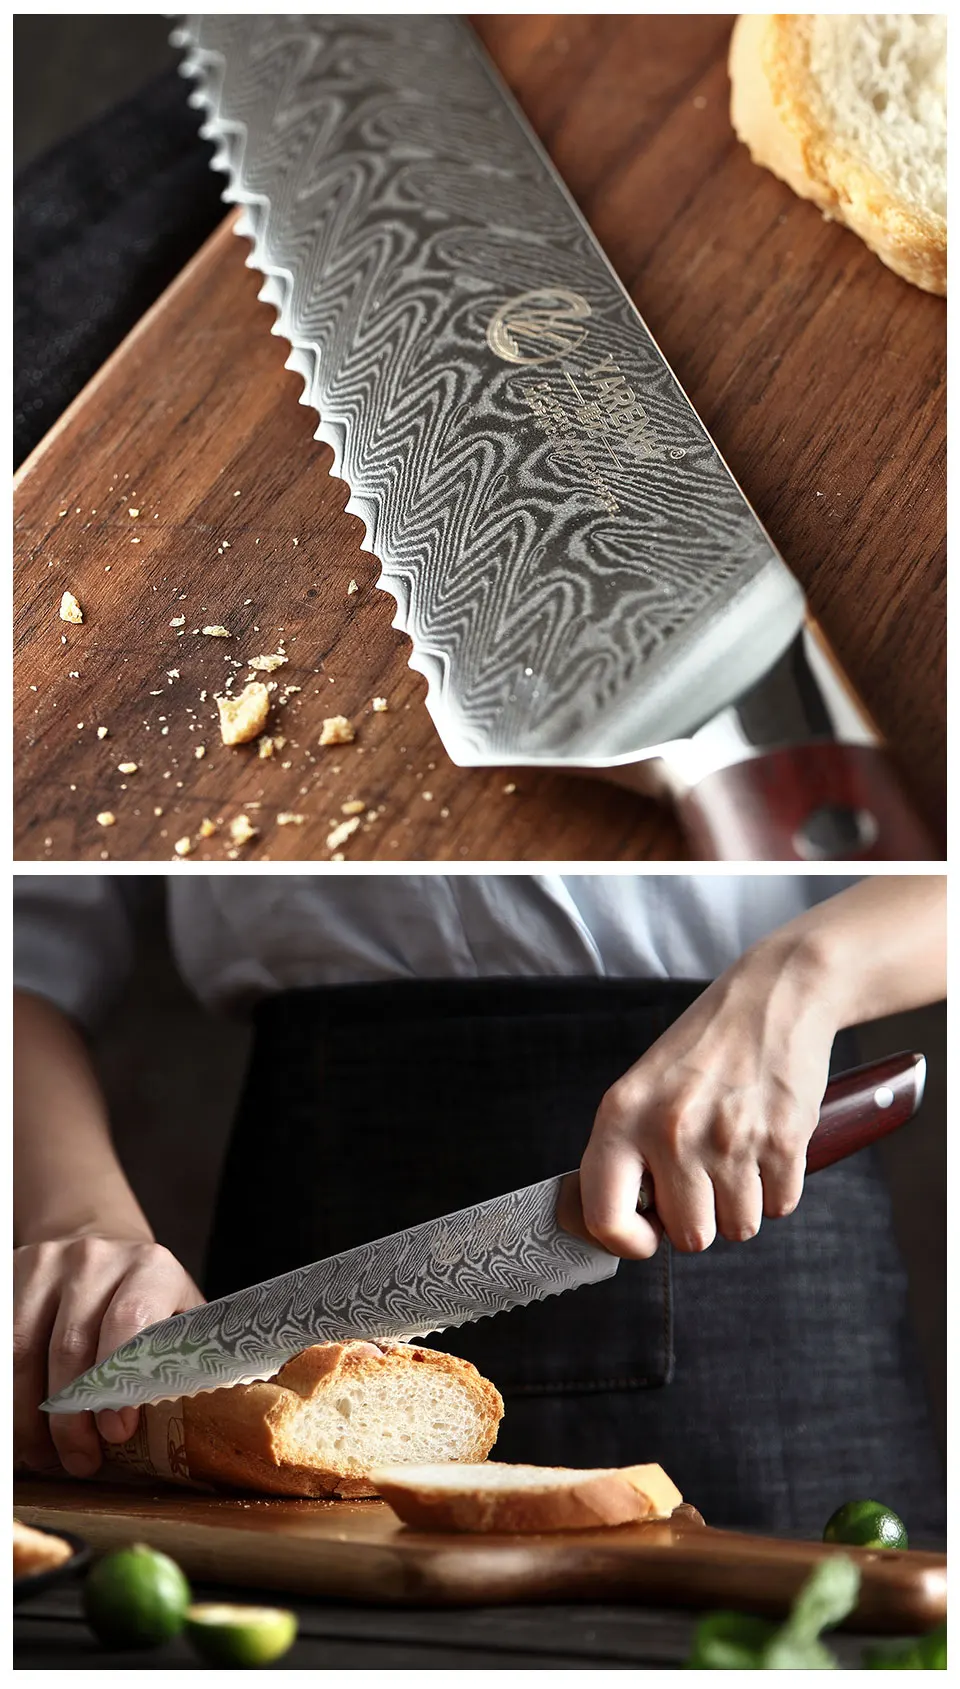 YARENH 8 дюймов нож для хлеба кухонные ножи 67 слоев дамасской стали зубчатый нож шеф-повара нож для резки хлеба торт Палисандр Ручка